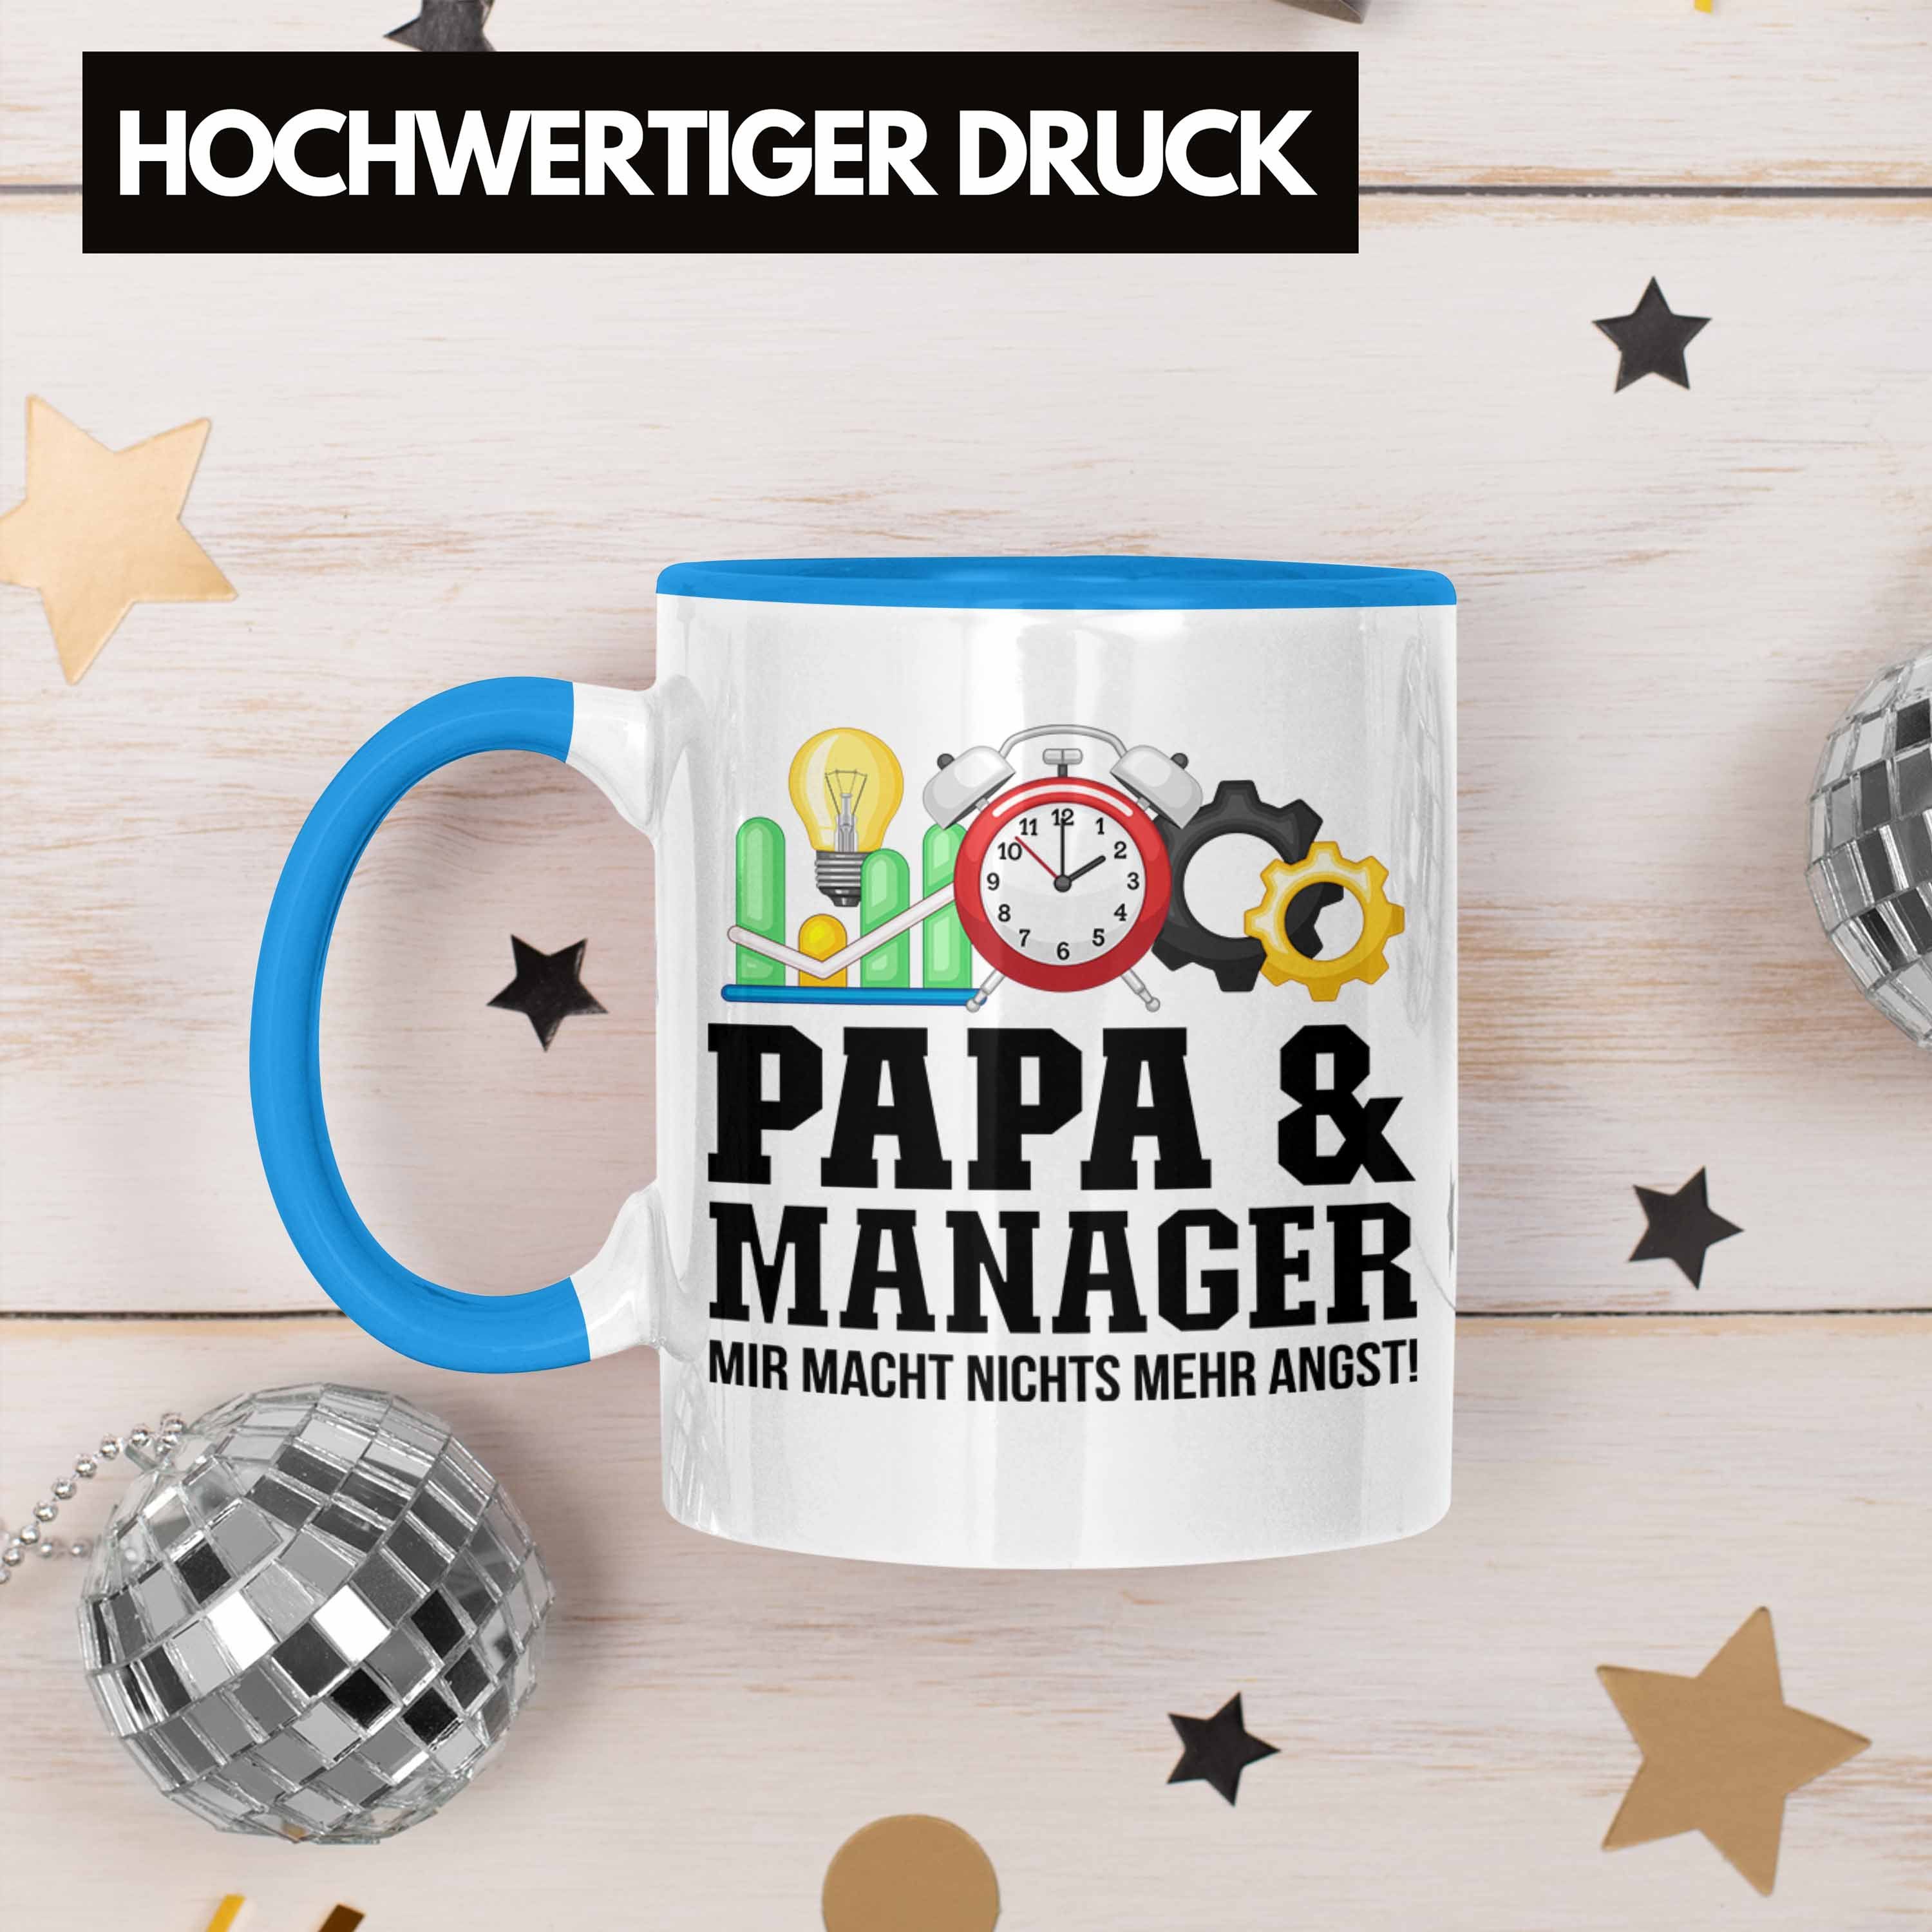 Blau Geschenkidee Papa - und für Tasse Trendation Geb Tasse Vater Trendation Manager Manager